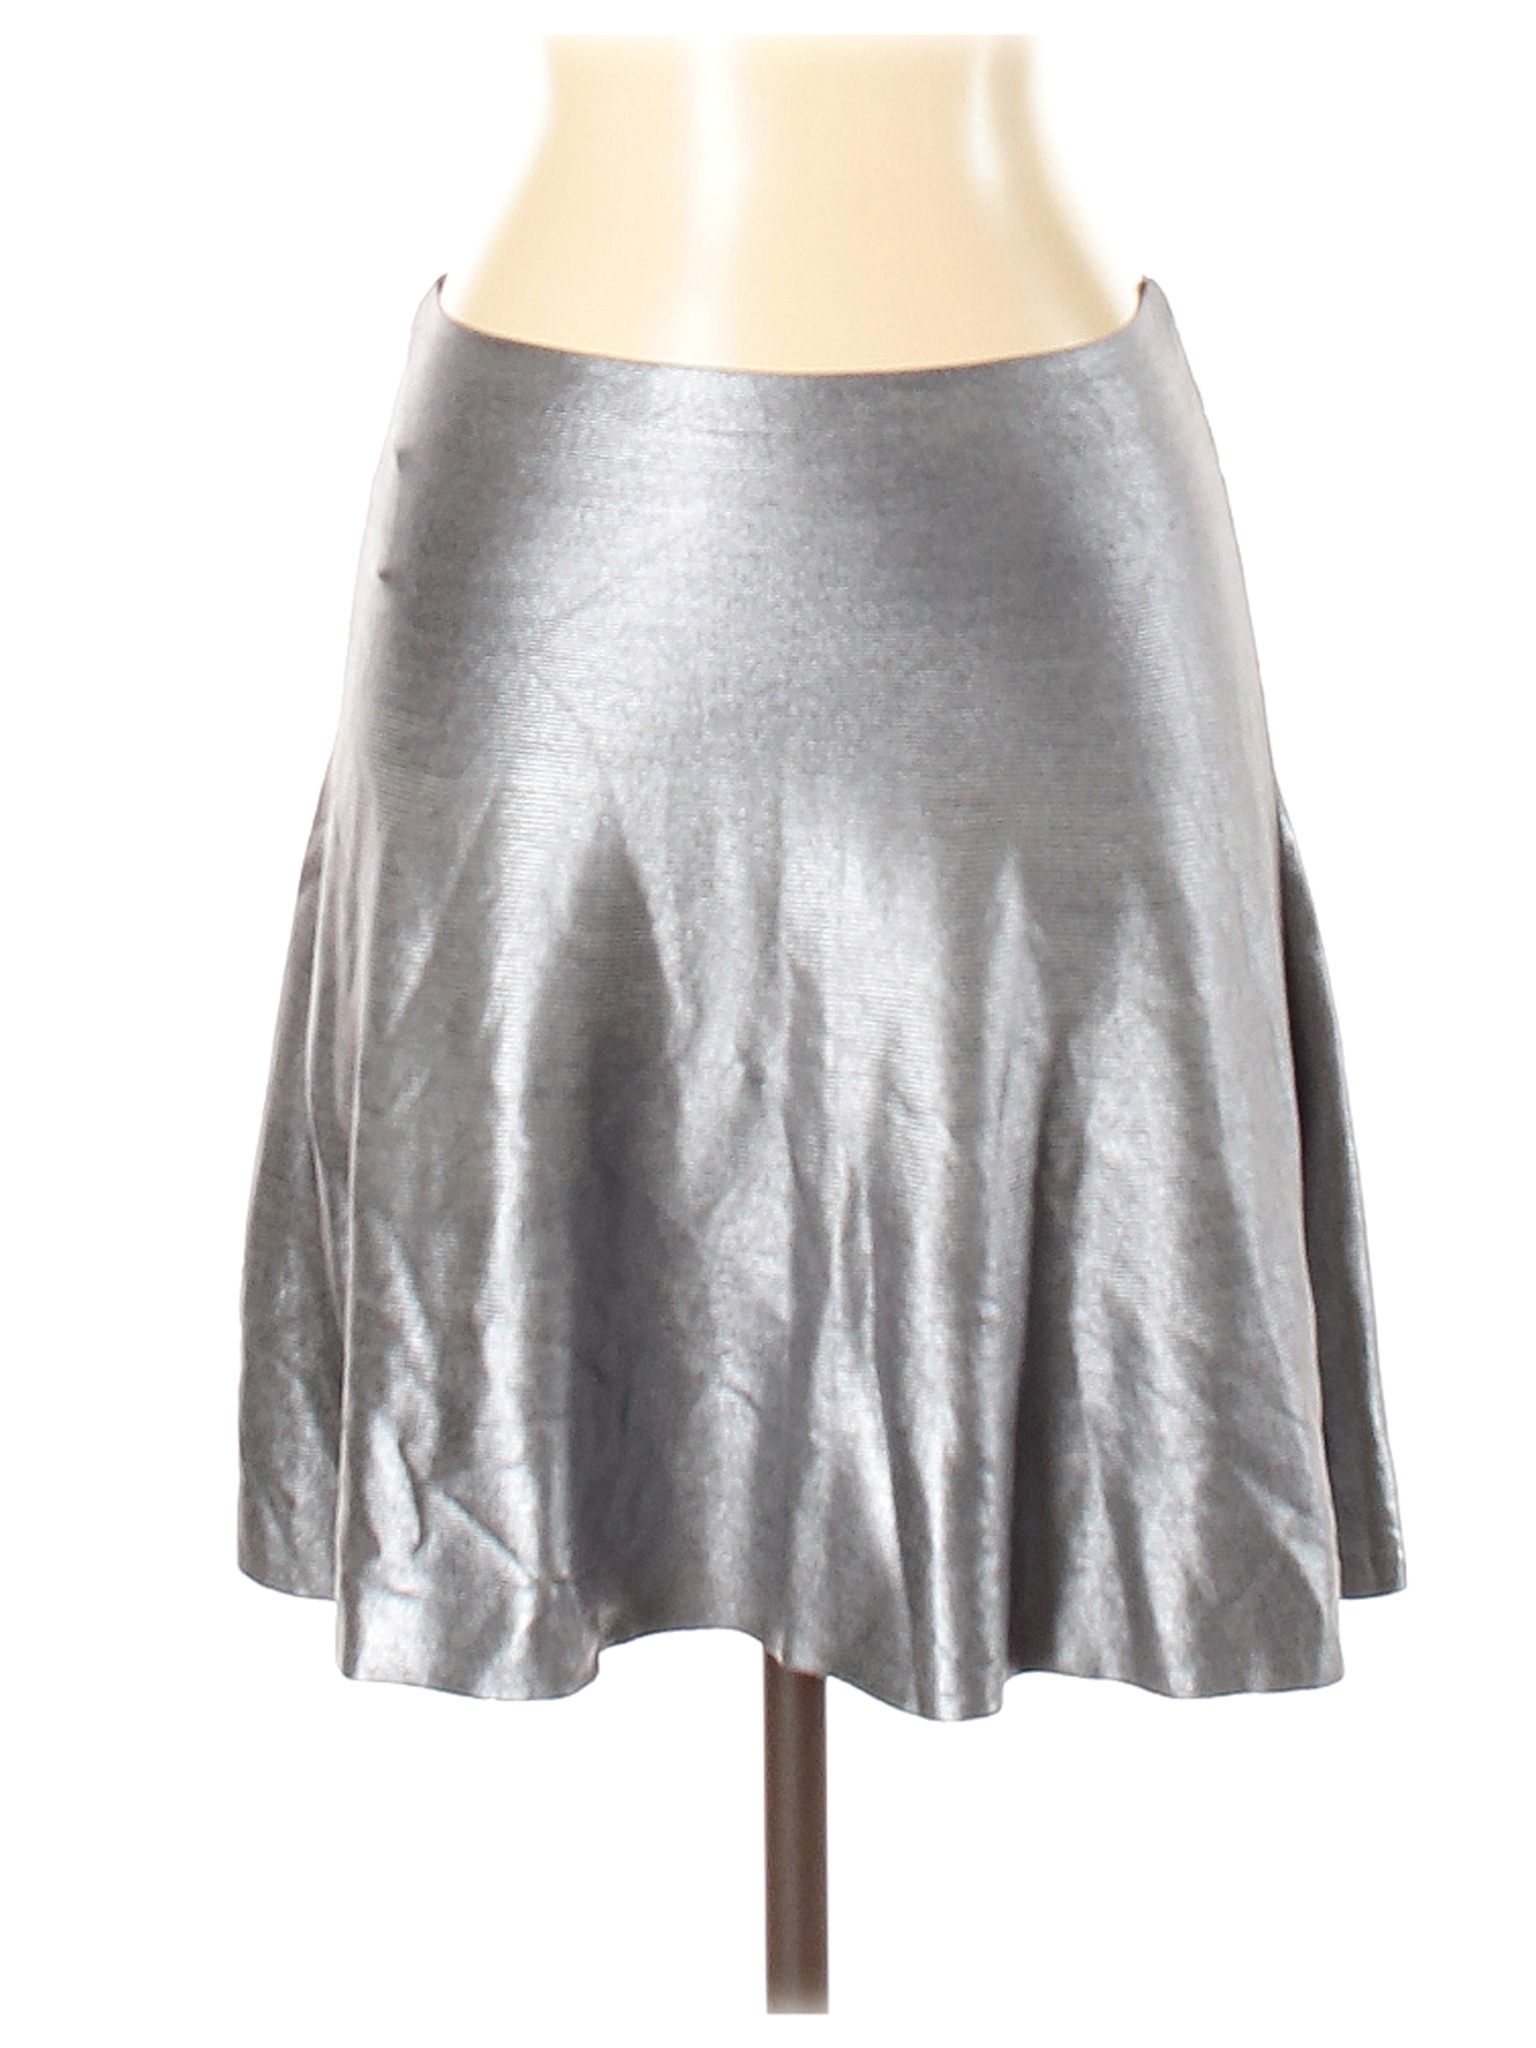 Zara Women Gray Formal Skirt S | eBay